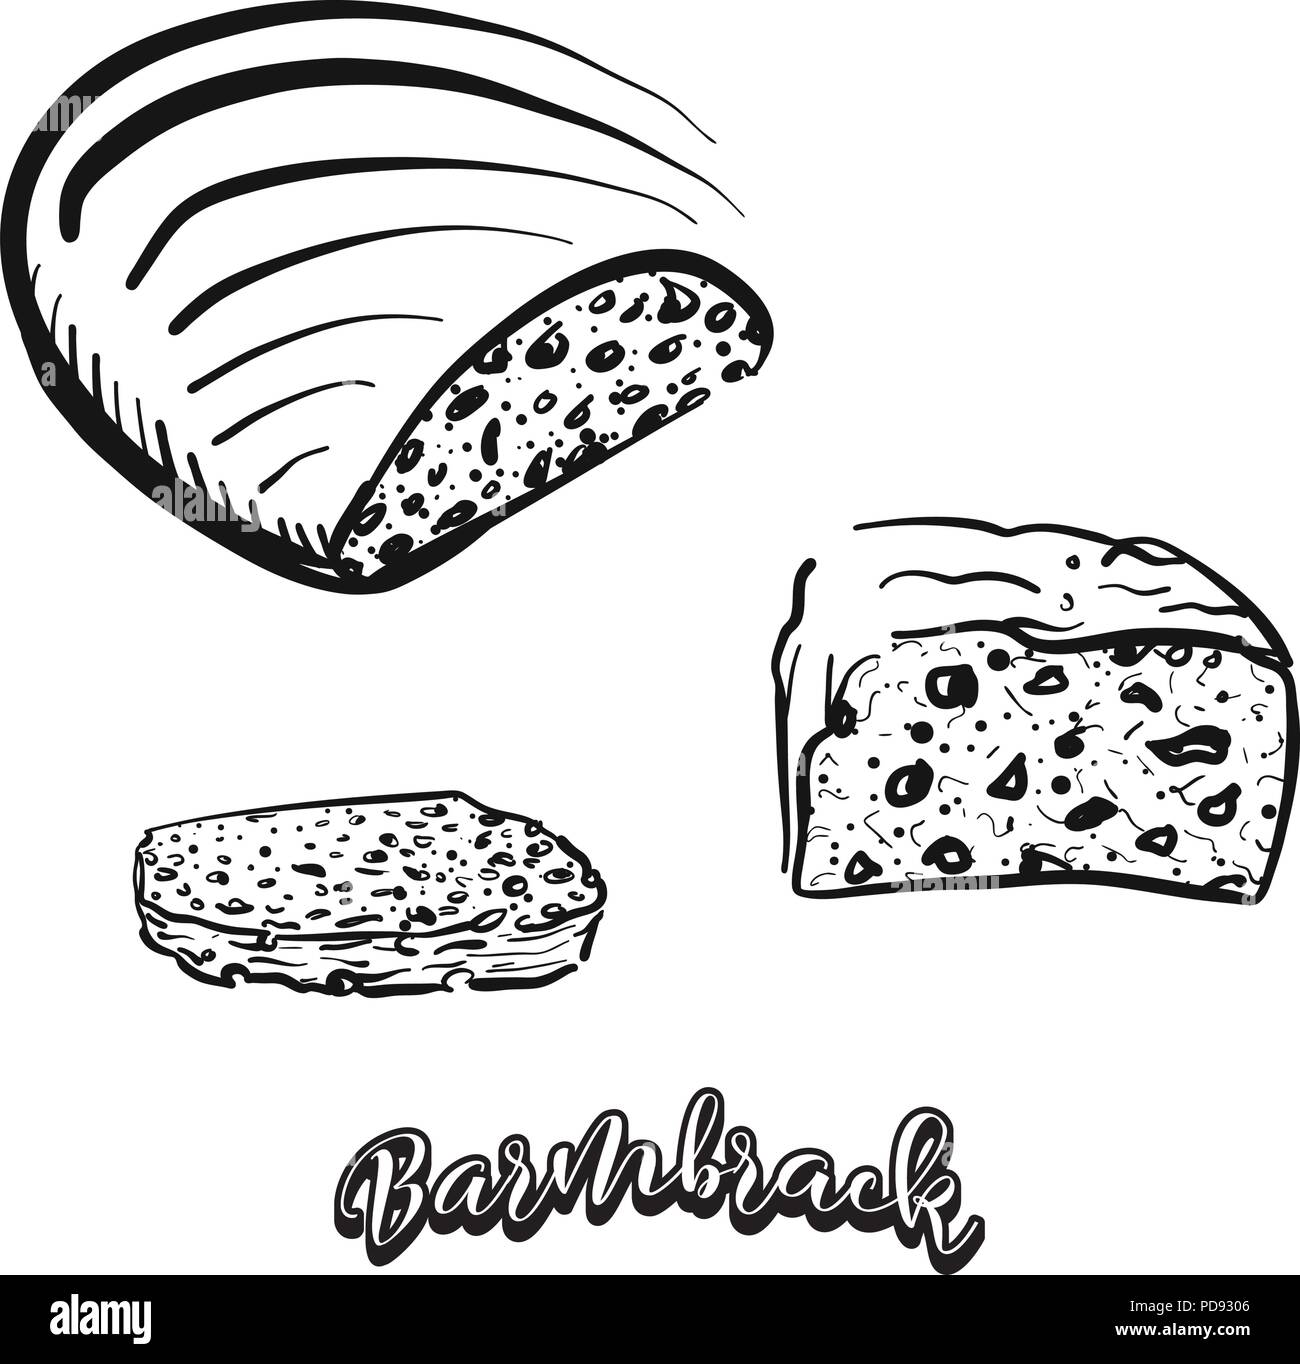 Croquis dessinés à la main de Barmbrack pain. Dessin vectoriel de la levure alimentaire pain, habituellement connu en Irlande. Illustration du pain series. Illustration de Vecteur